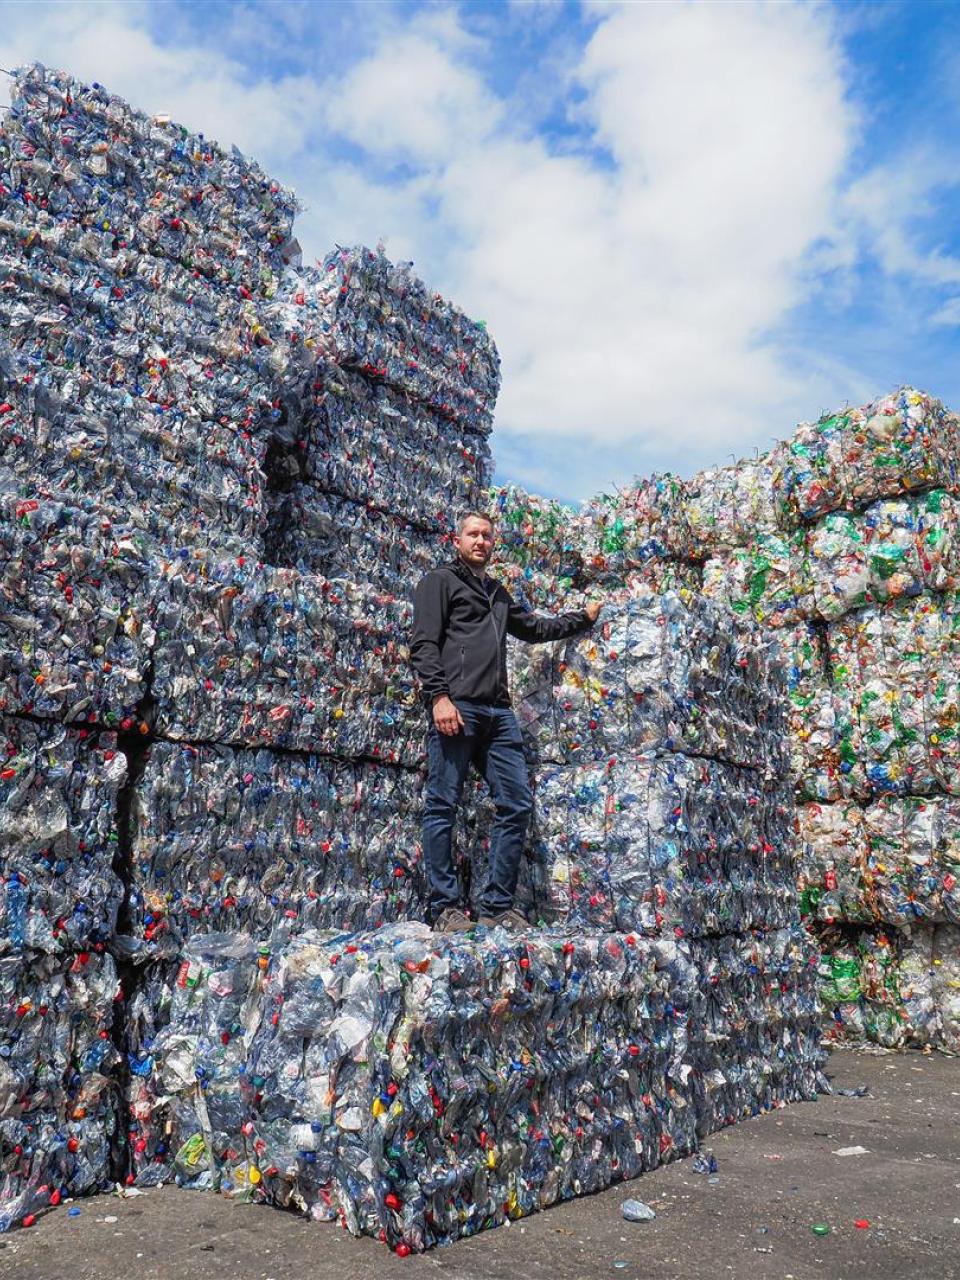 Die Müller Recycling AG sortiert täglich 90 Tonnen PET-Getränkeflaschen nach ihrer Farbe. Geschäftsführer Thomas Müller ist stolz auf die Reinheit und die hohe Qualität des Materials. © Müller Recycling AG